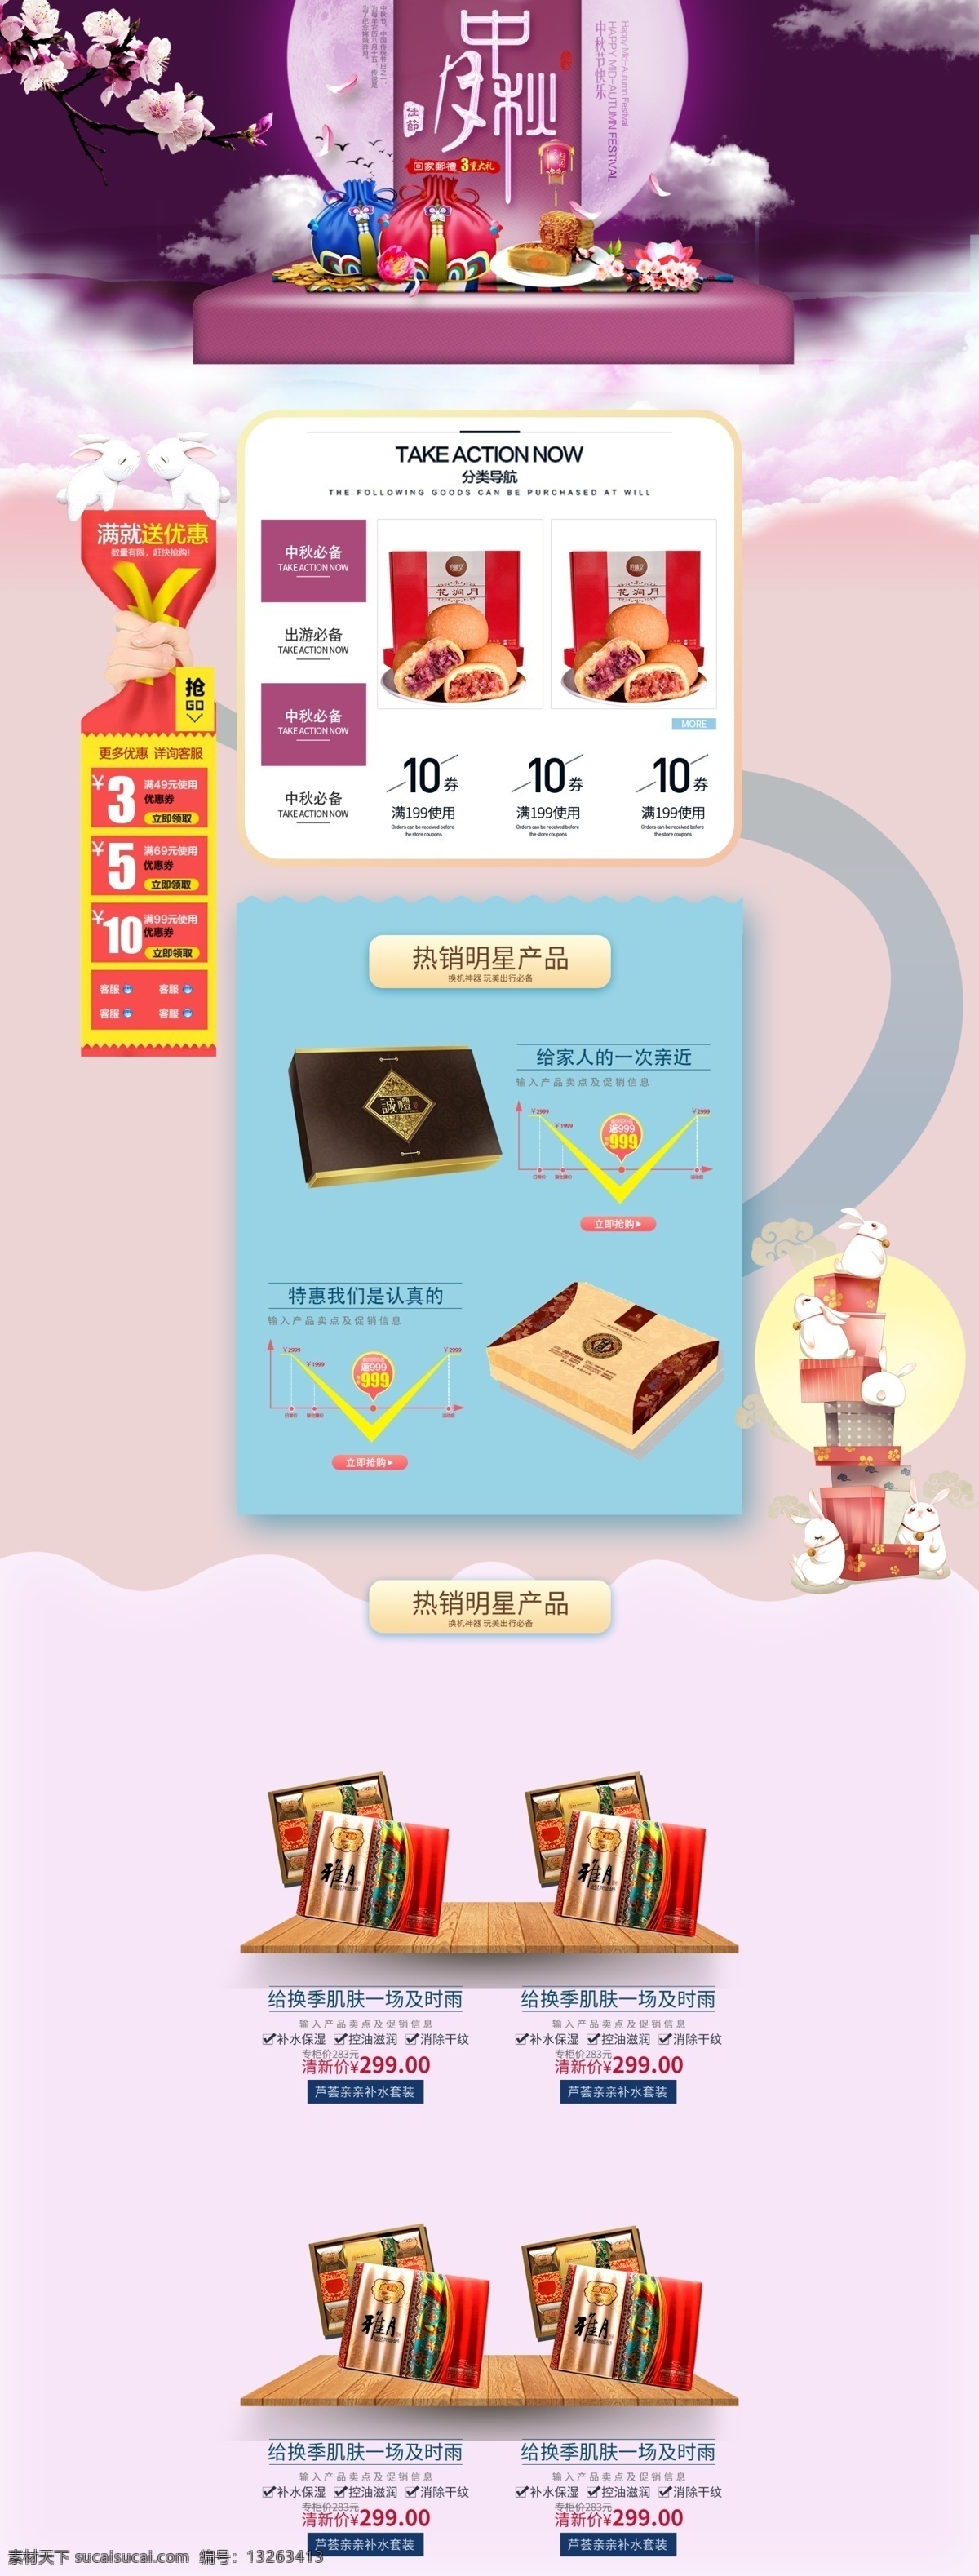 紫色 中国 节日 中秋 氛围 天猫 淘宝 首页 月饼 鲜肉月饼